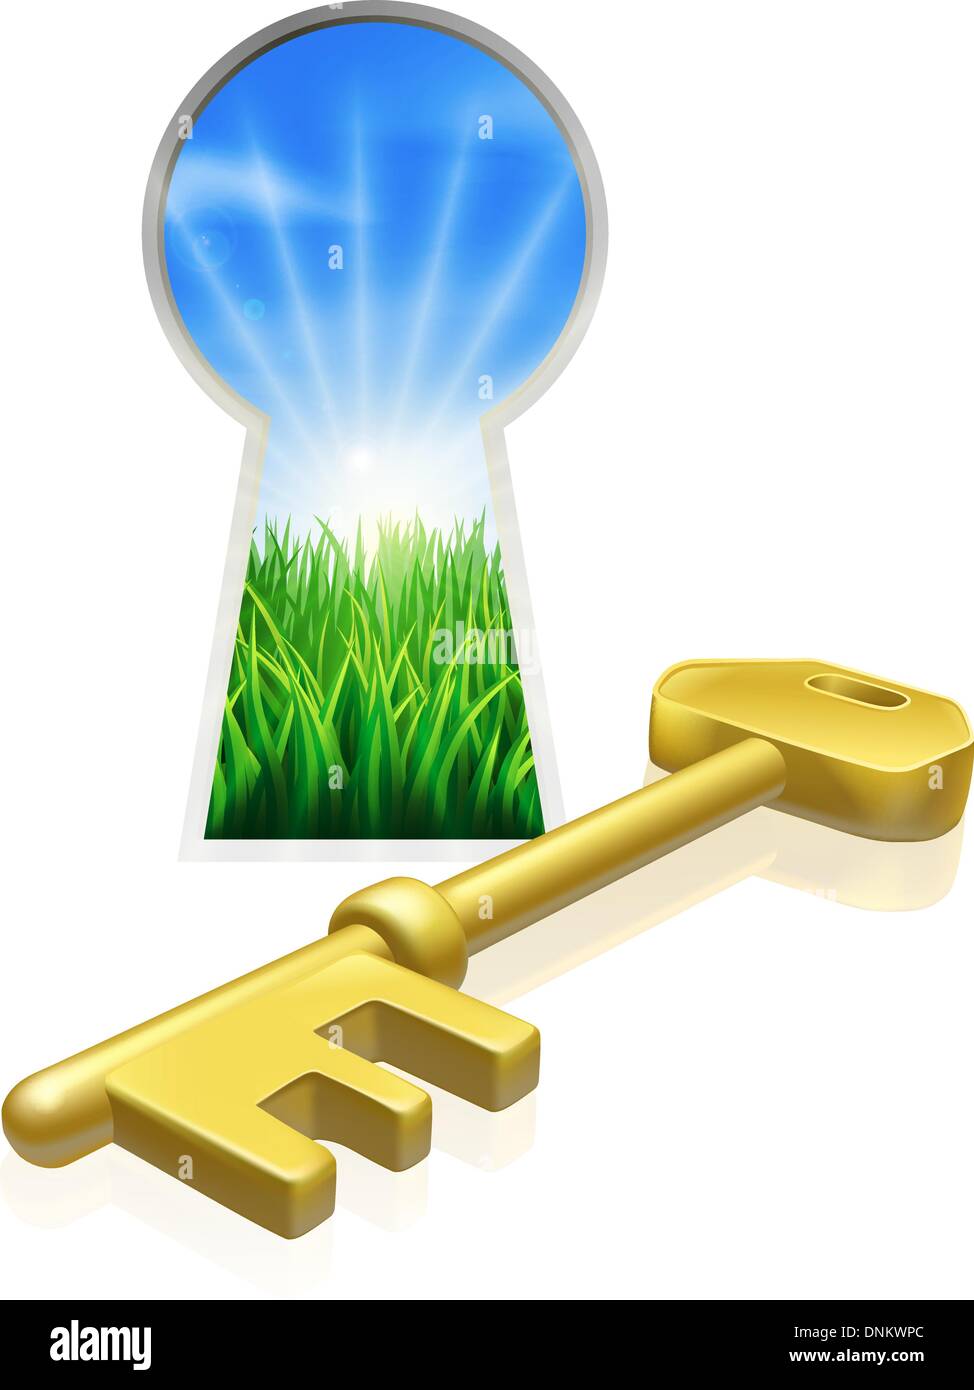 Illustrazione concettuale di chiave e serratura che si affaccia sul bellissimo campo verde. Concetto di libertà, opportunità o altro bus Illustrazione Vettoriale